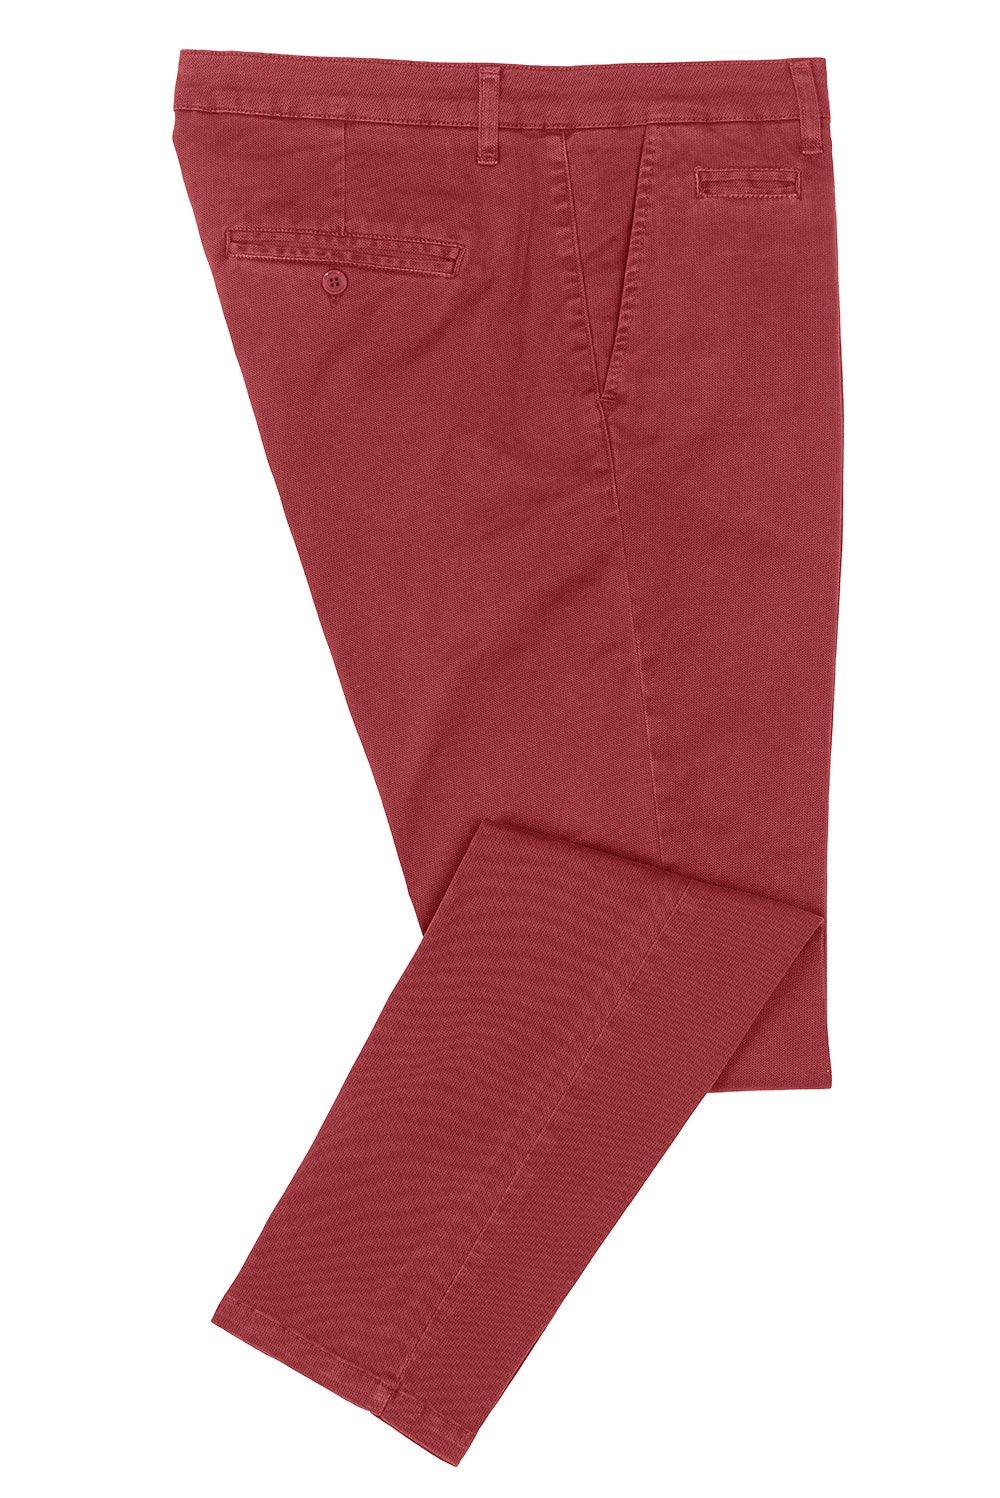 Pantaloni slim rosii uni 0